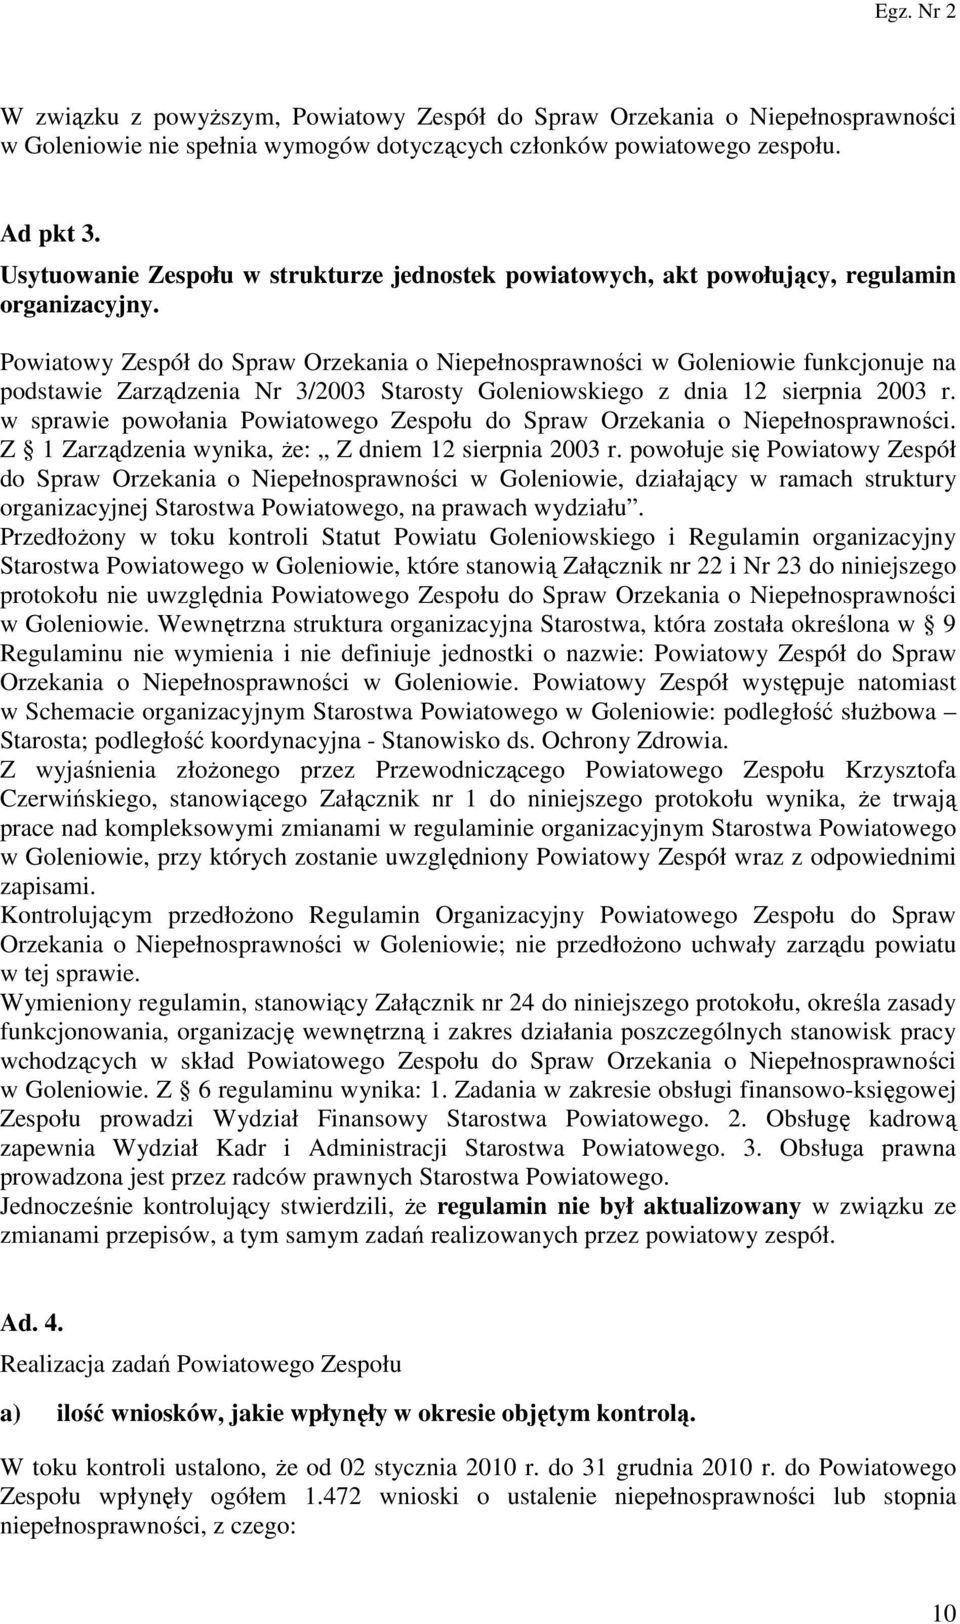 Powiatowy Zespół do Spraw Orzekania o Niepełnosprawności w Goleniowie funkcjonuje na podstawie Zarządzenia Nr 3/2003 Starosty Goleniowskiego z dnia 12 sierpnia 2003 r.